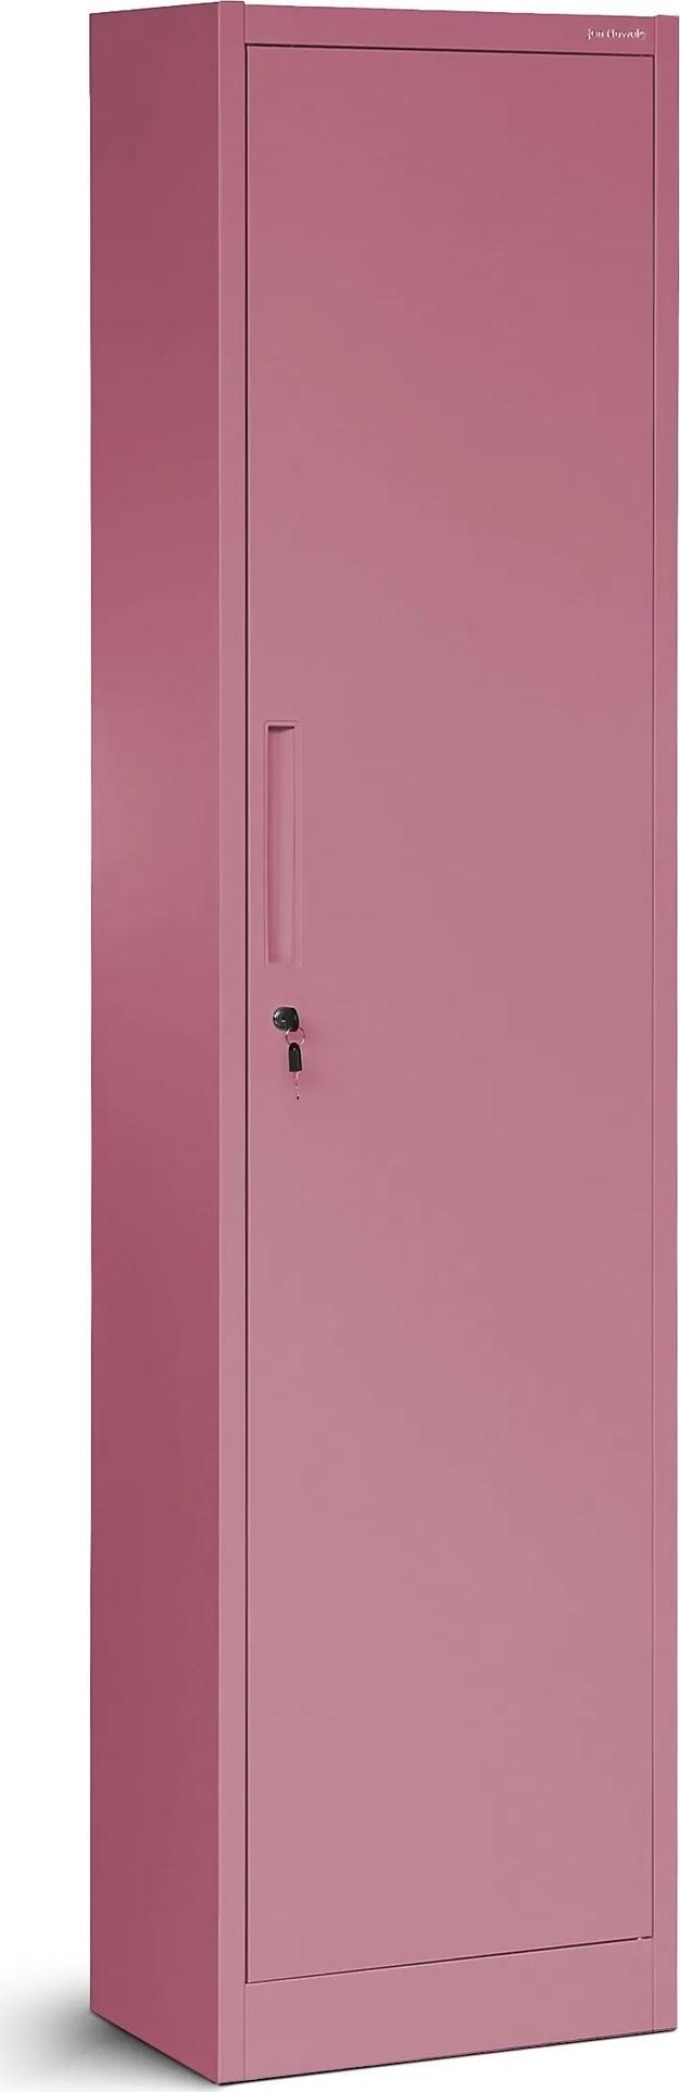 JAN NOWAK Úzká kancelářská skříň ALEX, 450 x 850 x 400 mm, Fresh Style: pudrově růžová